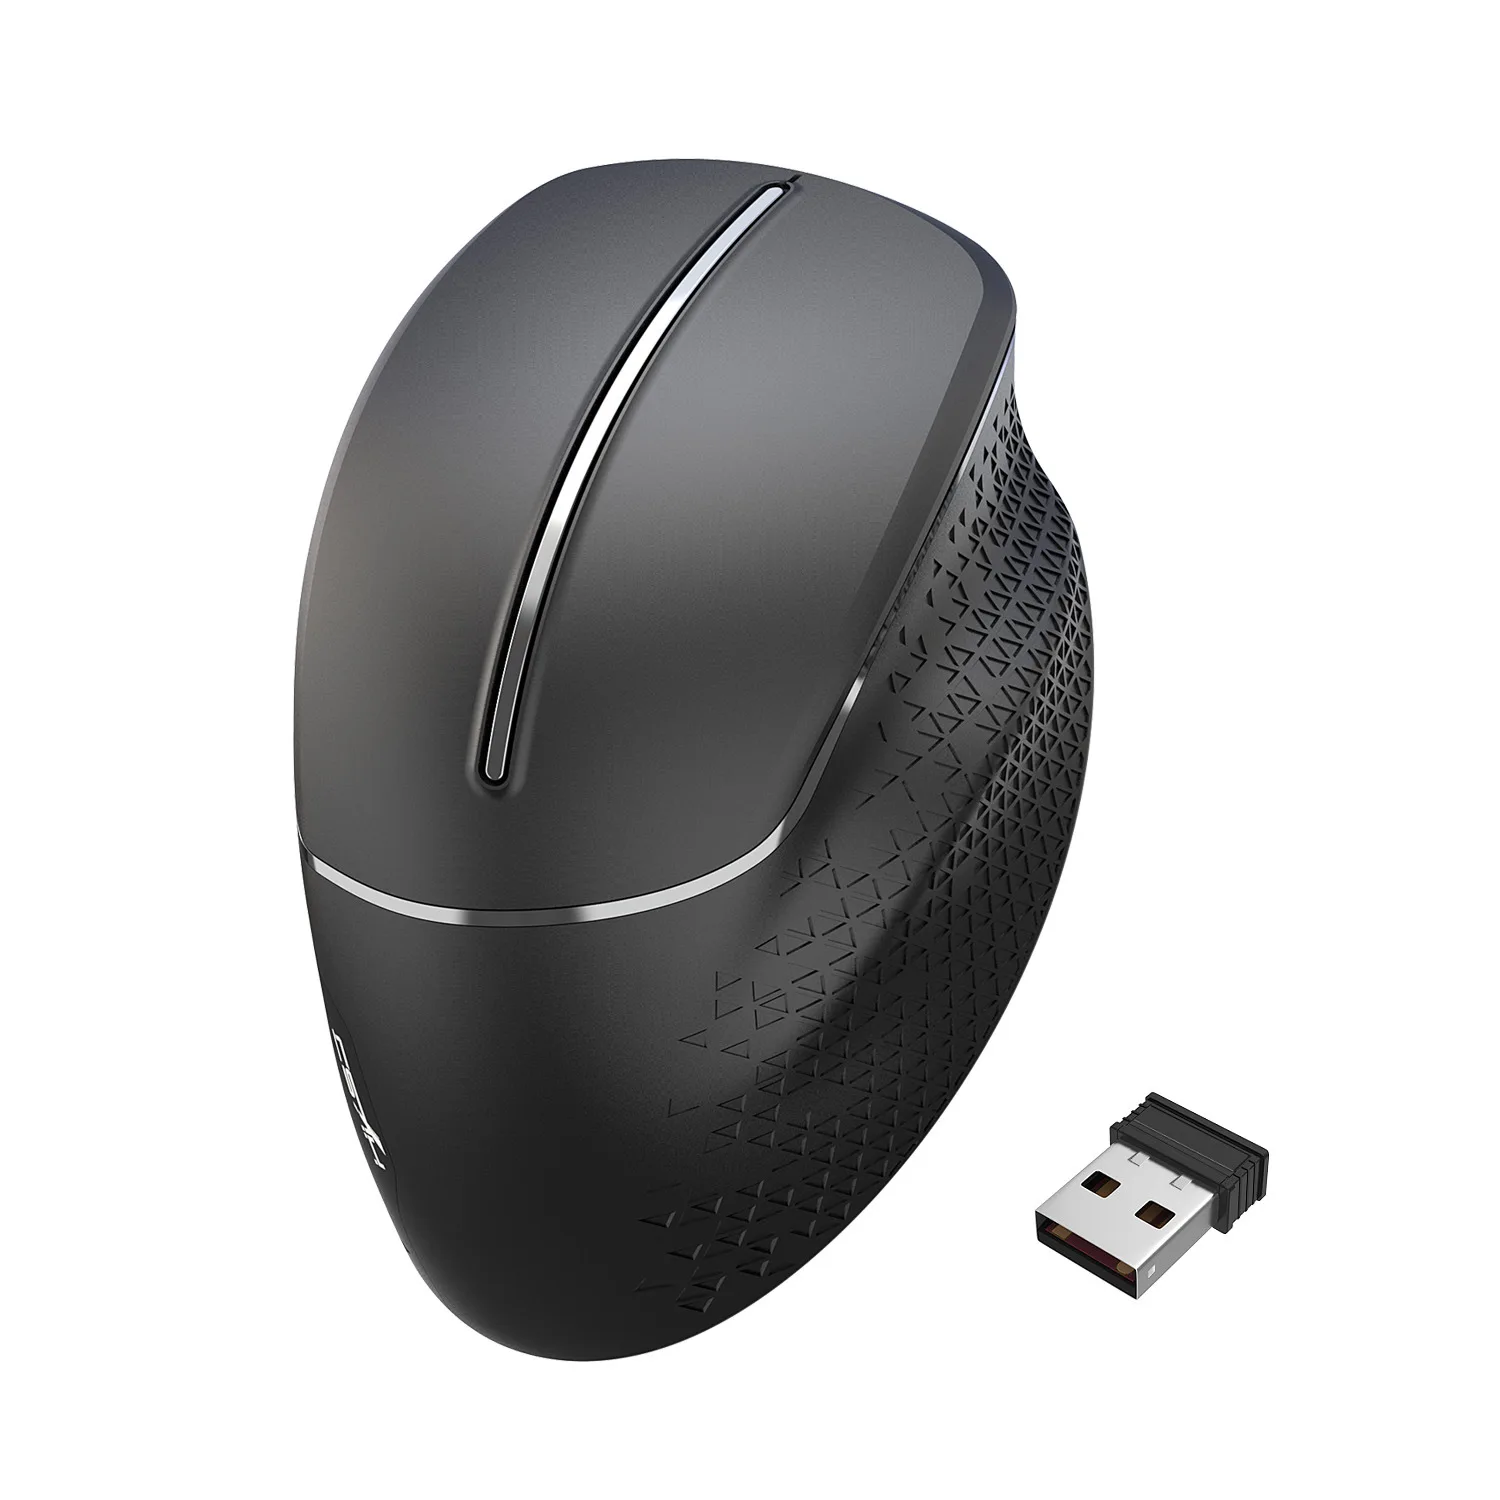 Удобная мышь беспроводная мышь 2,4 ГГц USB 6 кнопок 3600 dpi оптическая мышь Беспроводная правая ручная мышь офис для ПК ноутбука